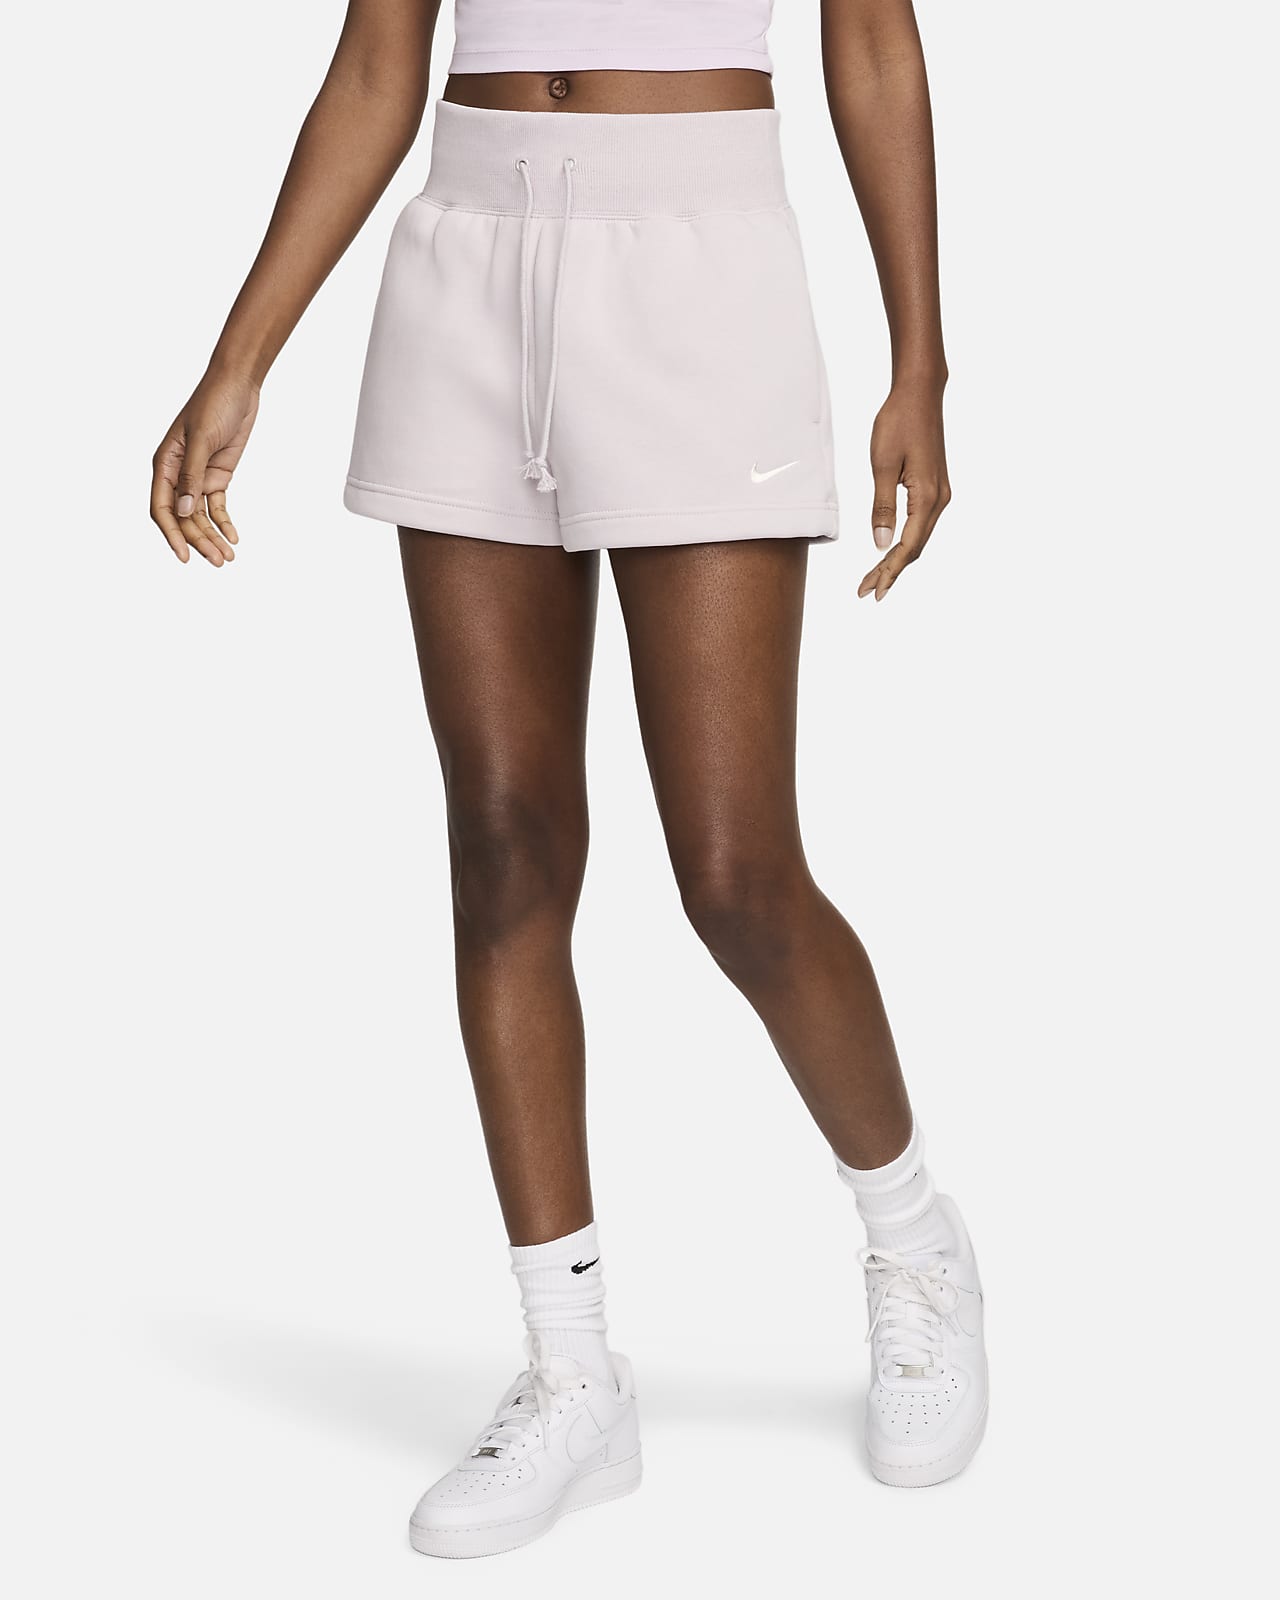 Nike Sportswear Phoenix Fleece Women's High-Waisted Cropped Sweatpants